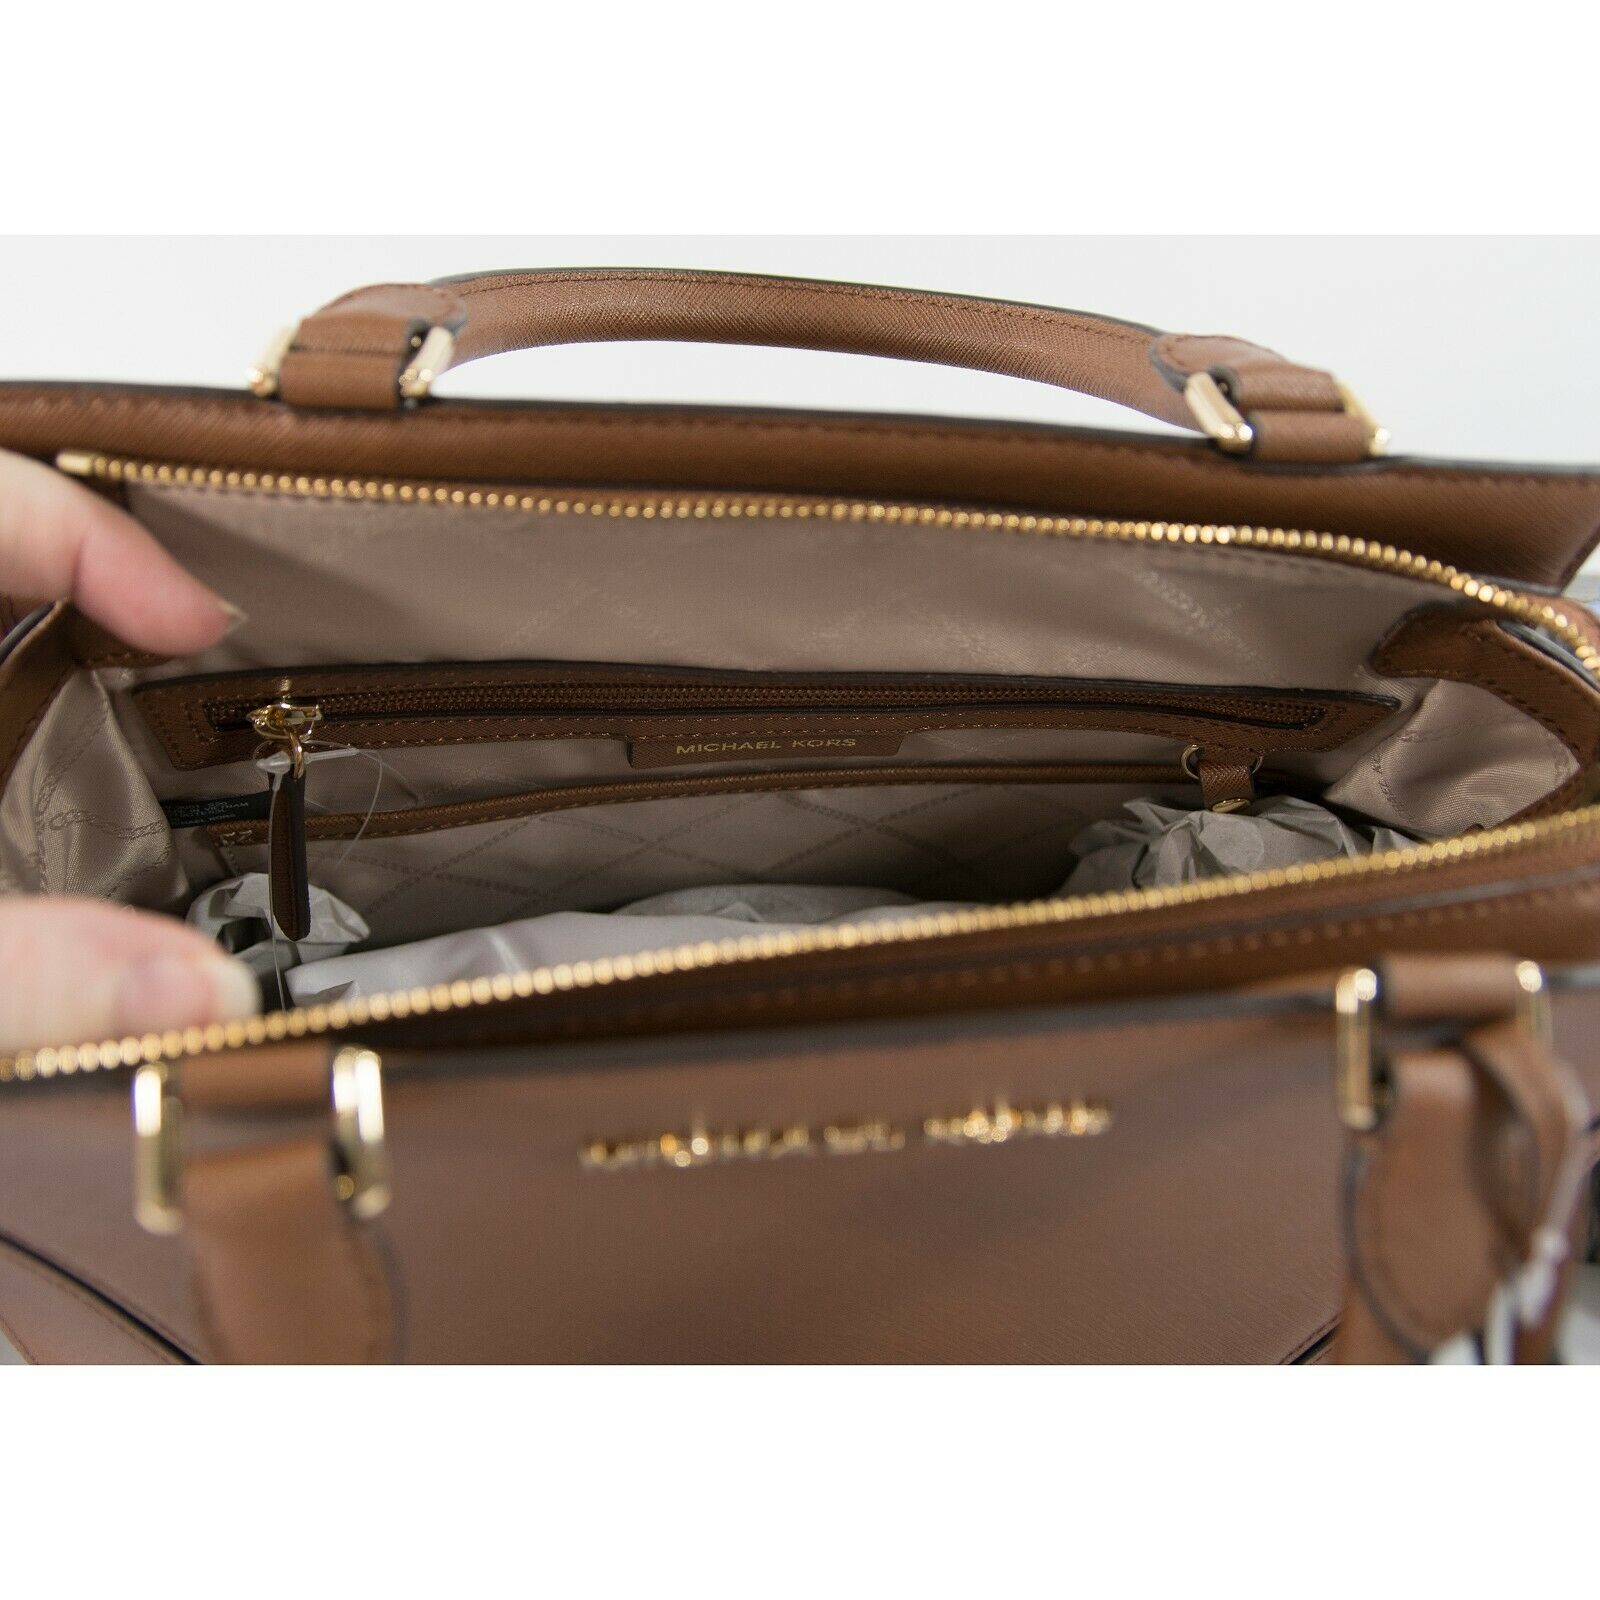 Michael kors prism large top zip satchel saffiano leather